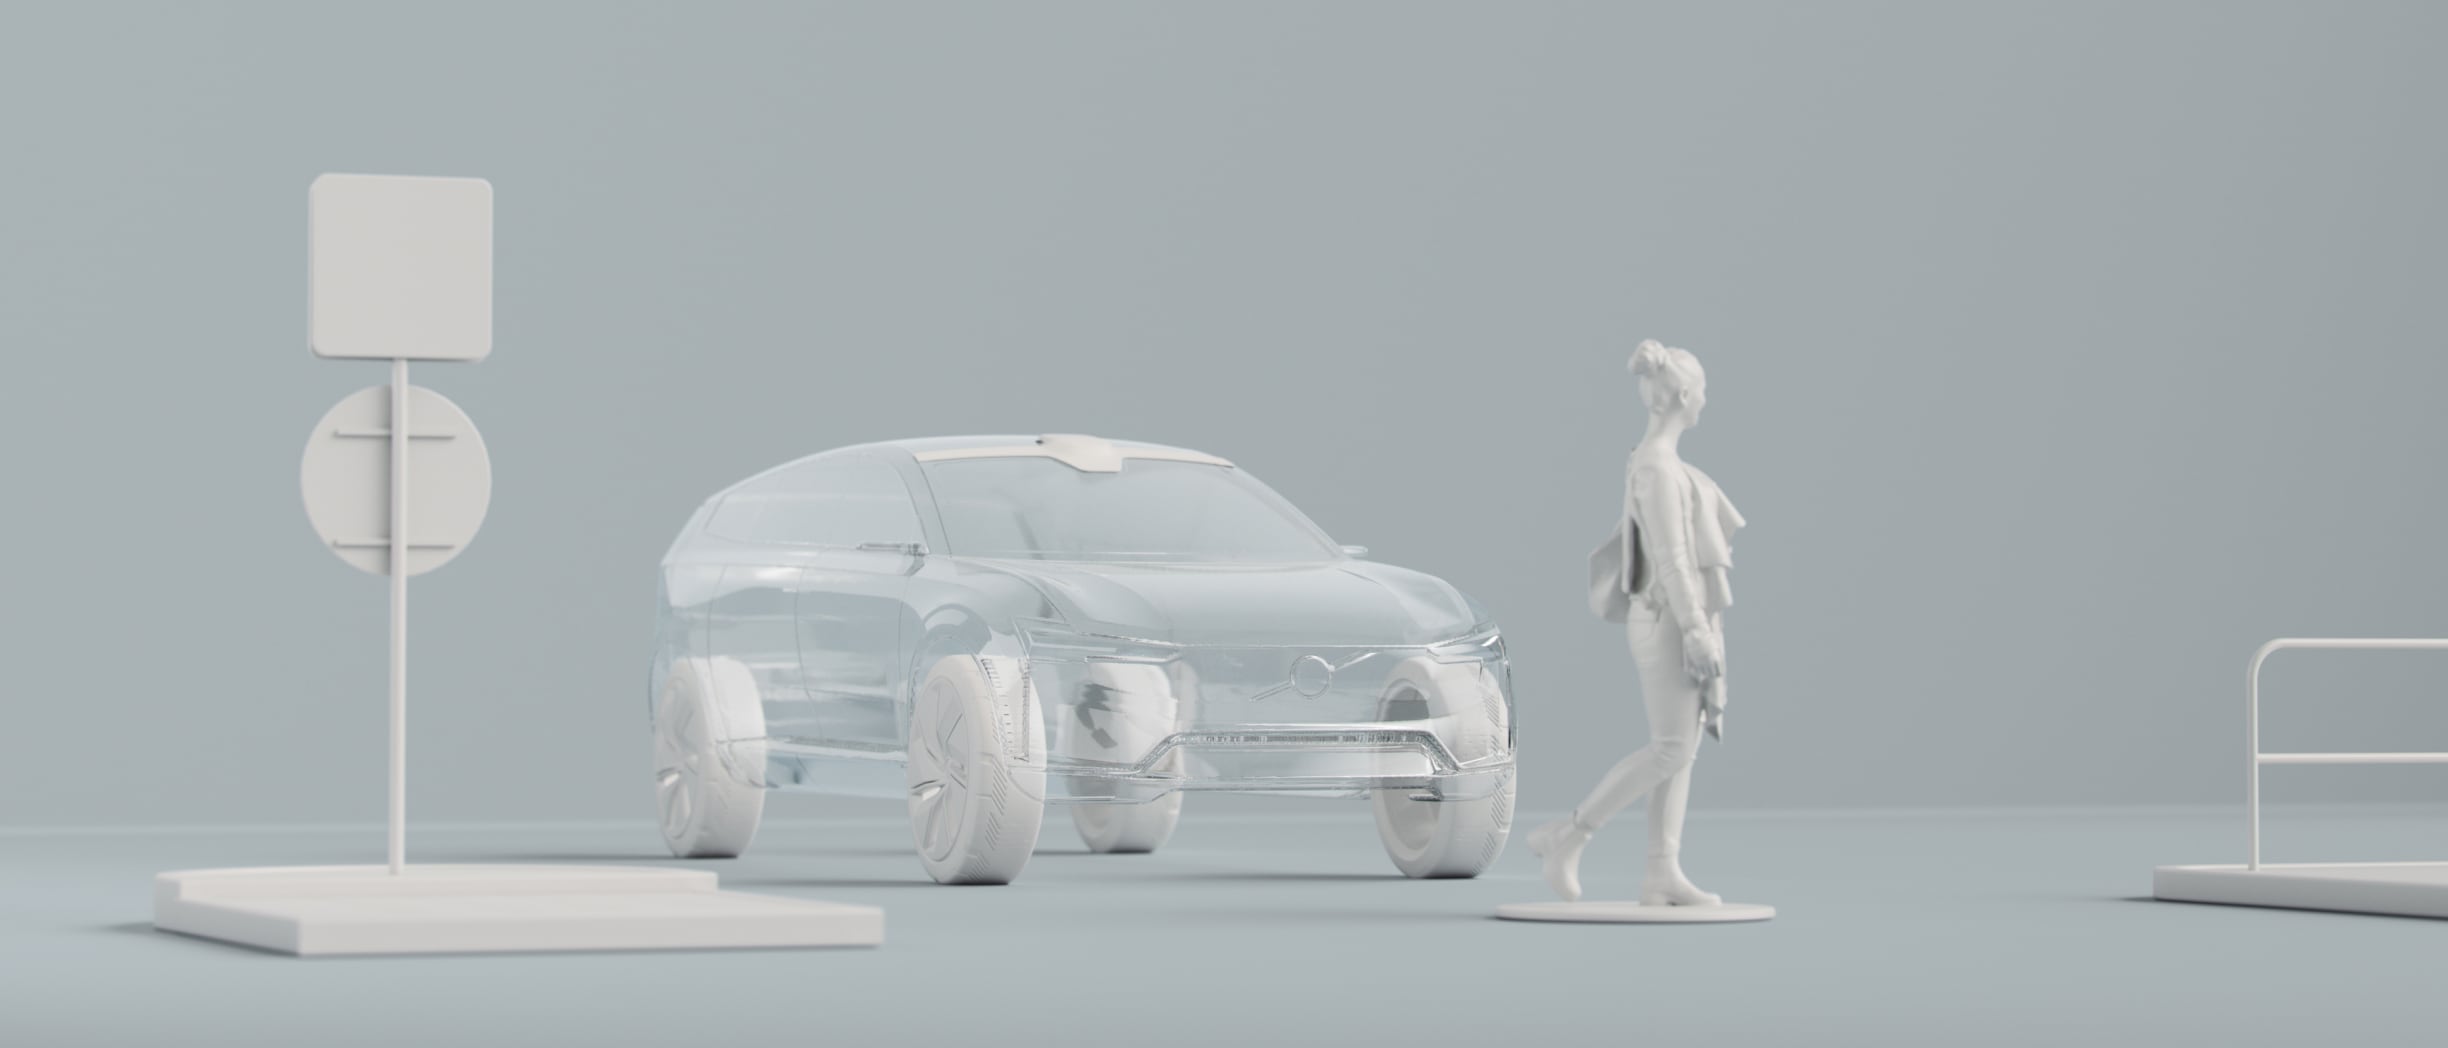 Ψηφιακή απεικόνιση του περιγράμματος ενός αυτοκινήτου, ενός ατόμου και άλλων αντικειμένων.